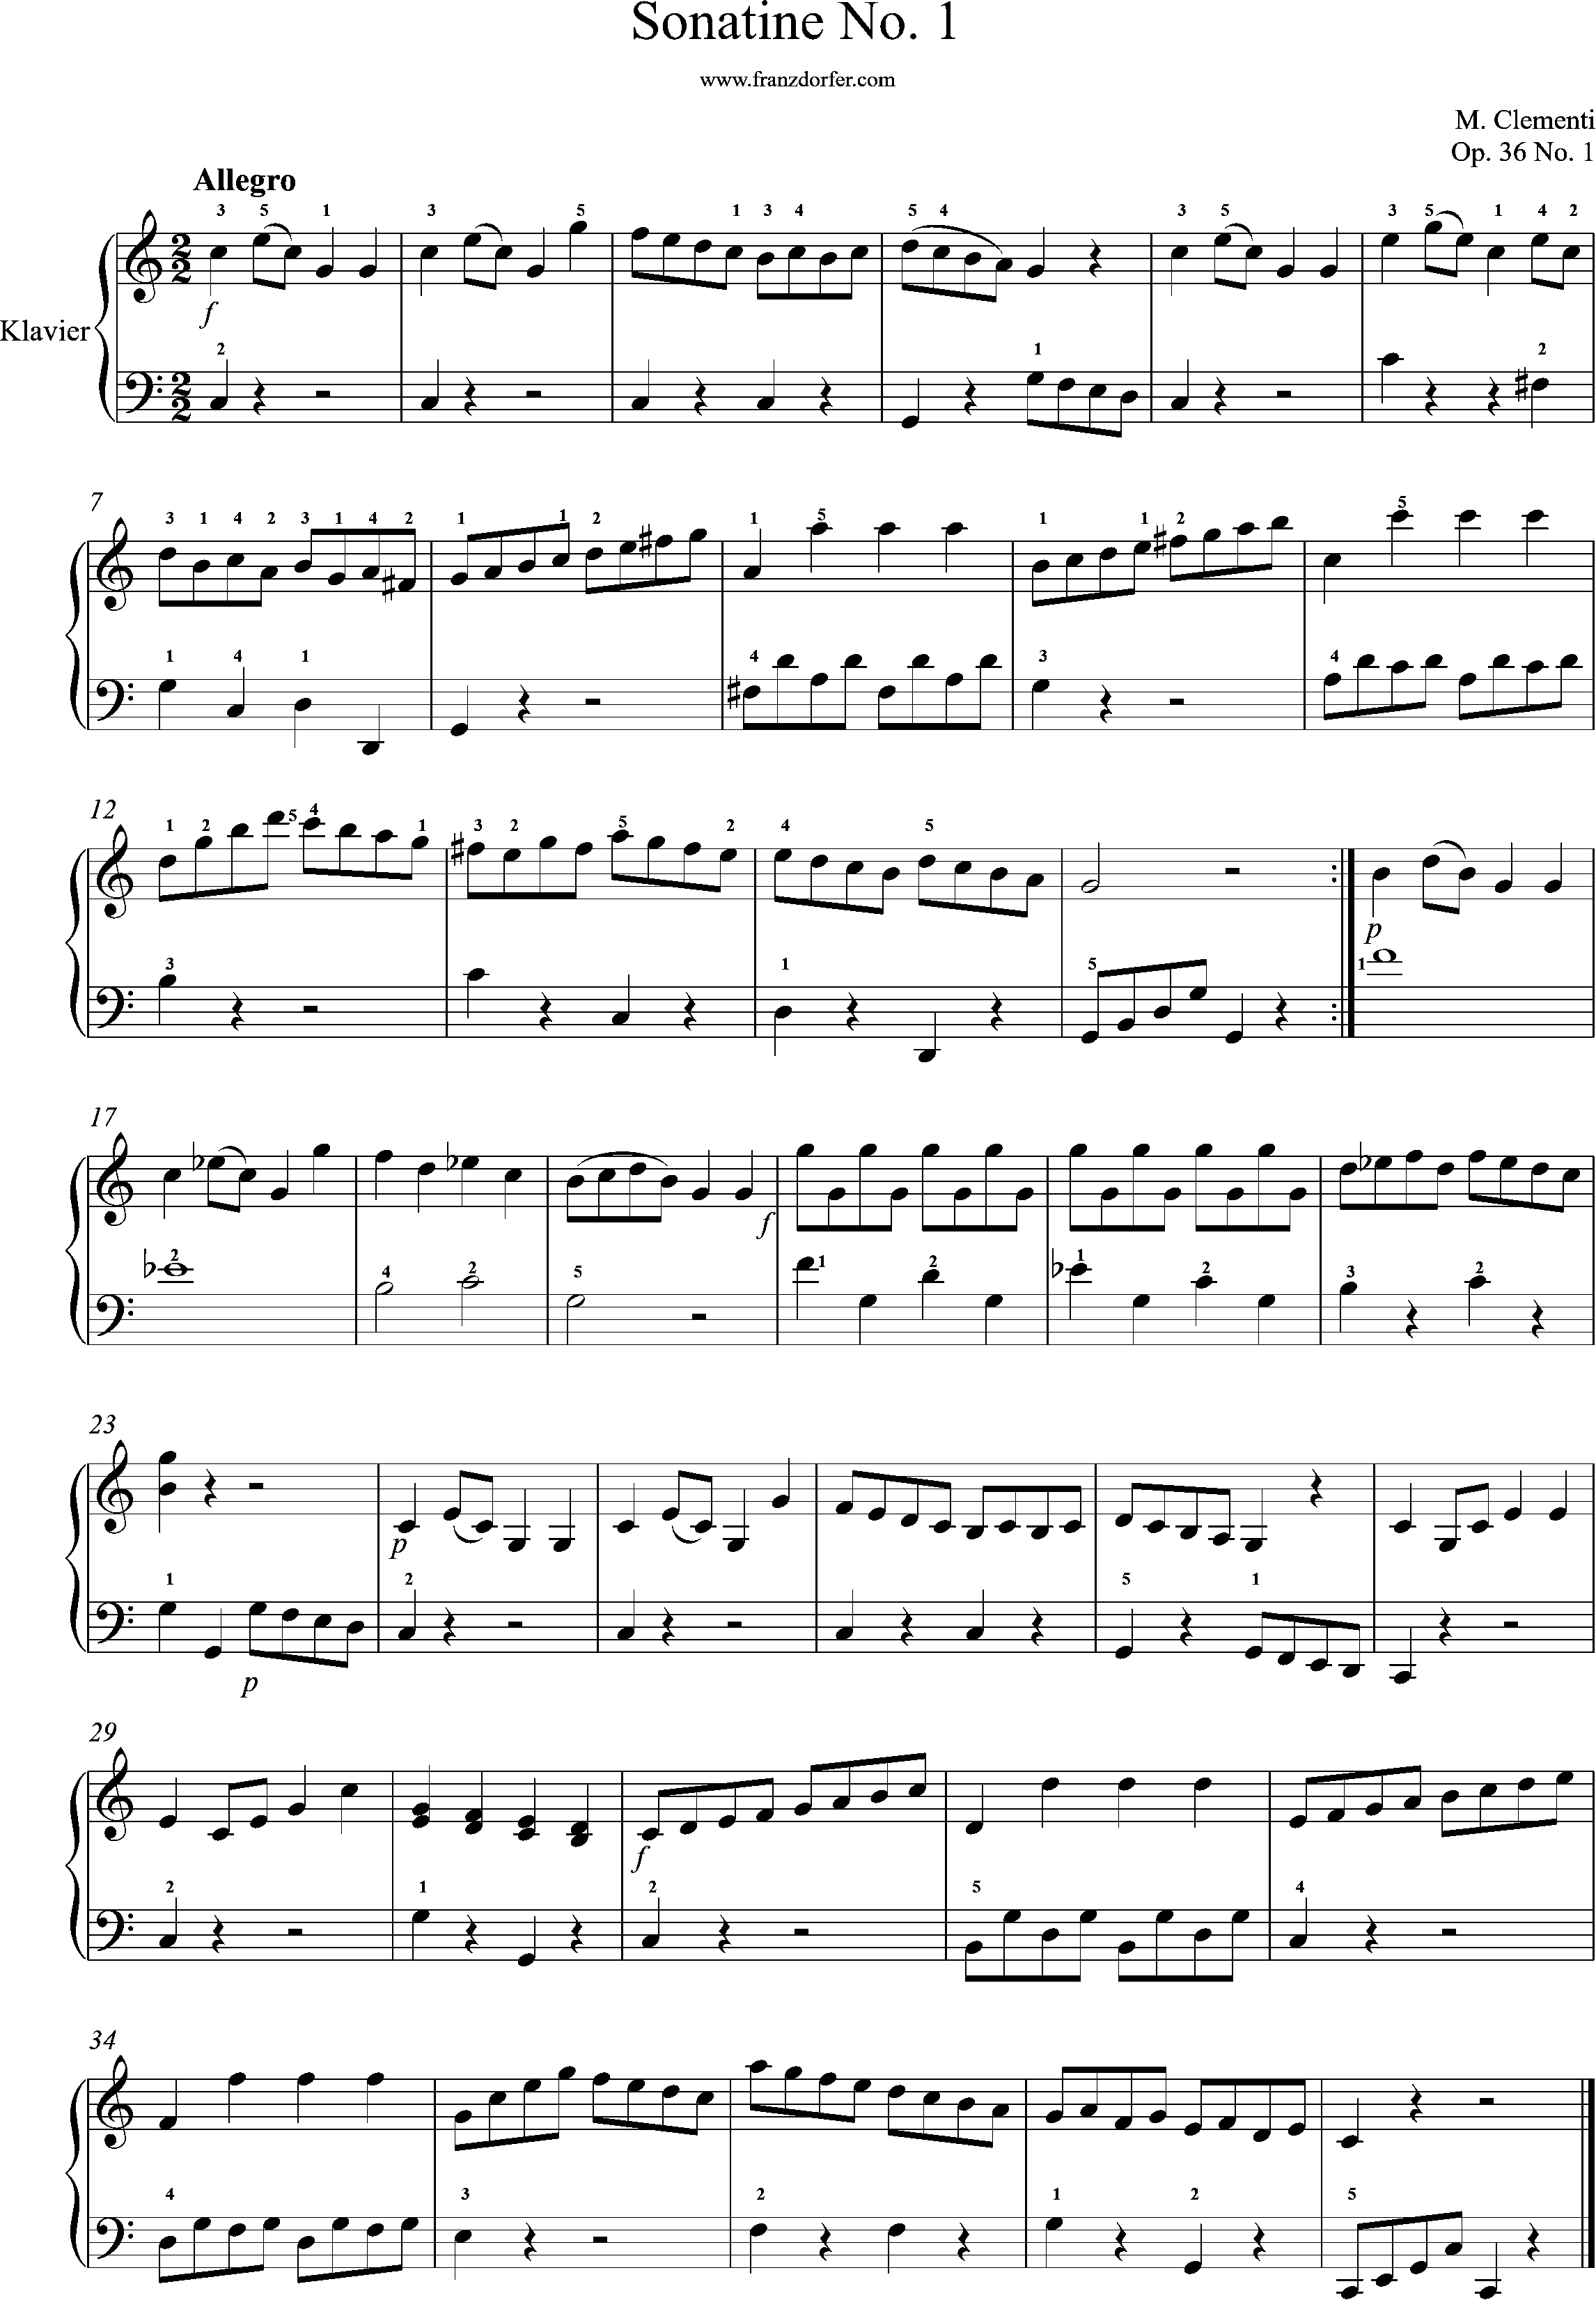 Allegro, Clementi, sonatine op 36